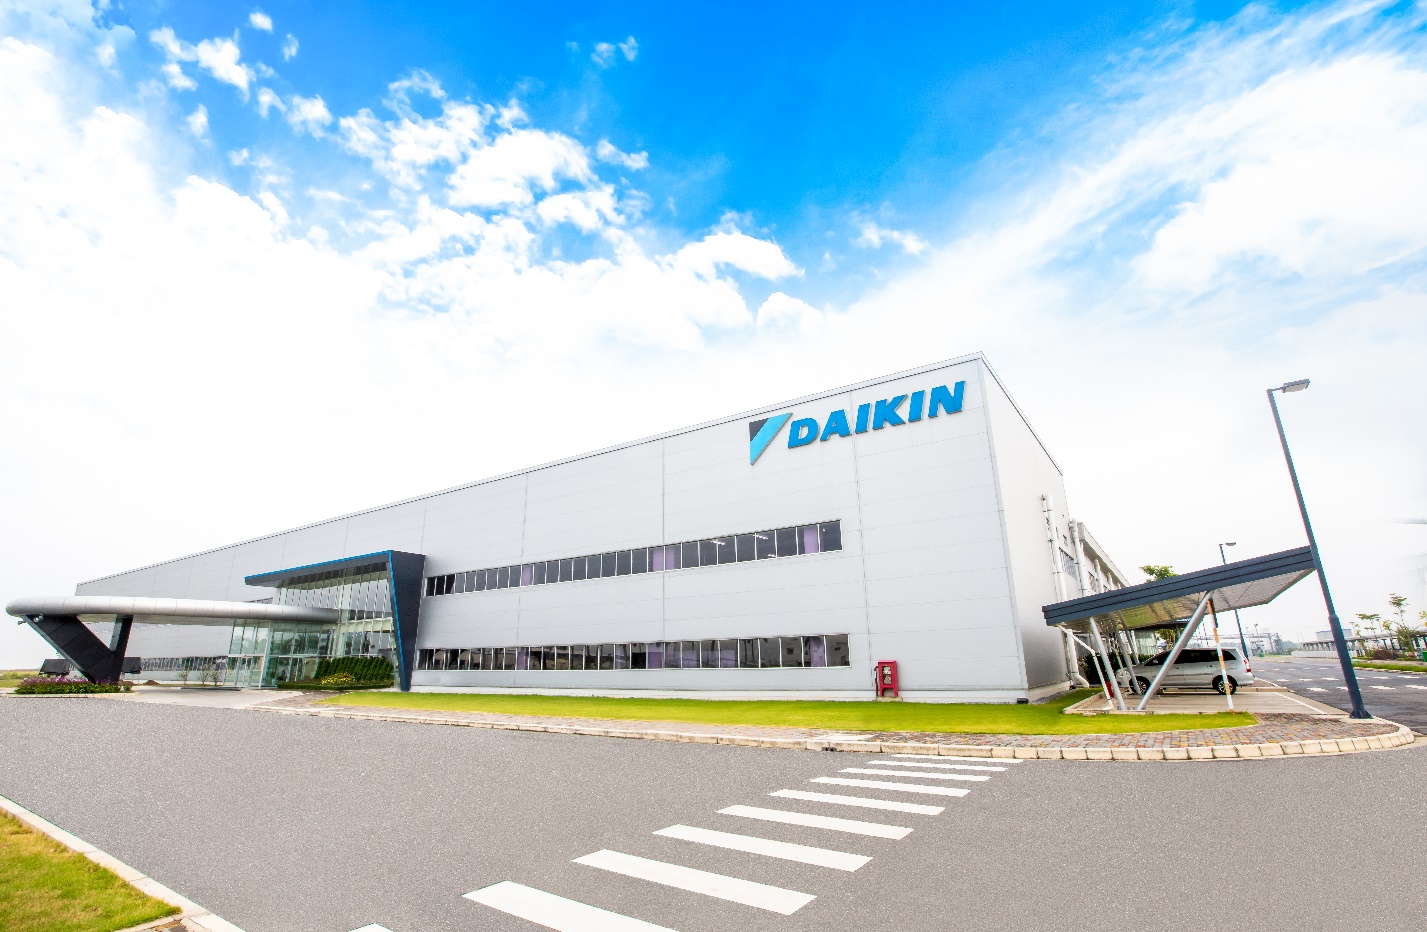 Là thương hiệu sản xuất điều hoà quốc tế tiên phong xây dựng nhà máy ở Việt Nam, tính đến năm 2023, Daikin đã đầu tư hơn 123 triệu đô cho dự án nhà máy Daikin Vietnam.